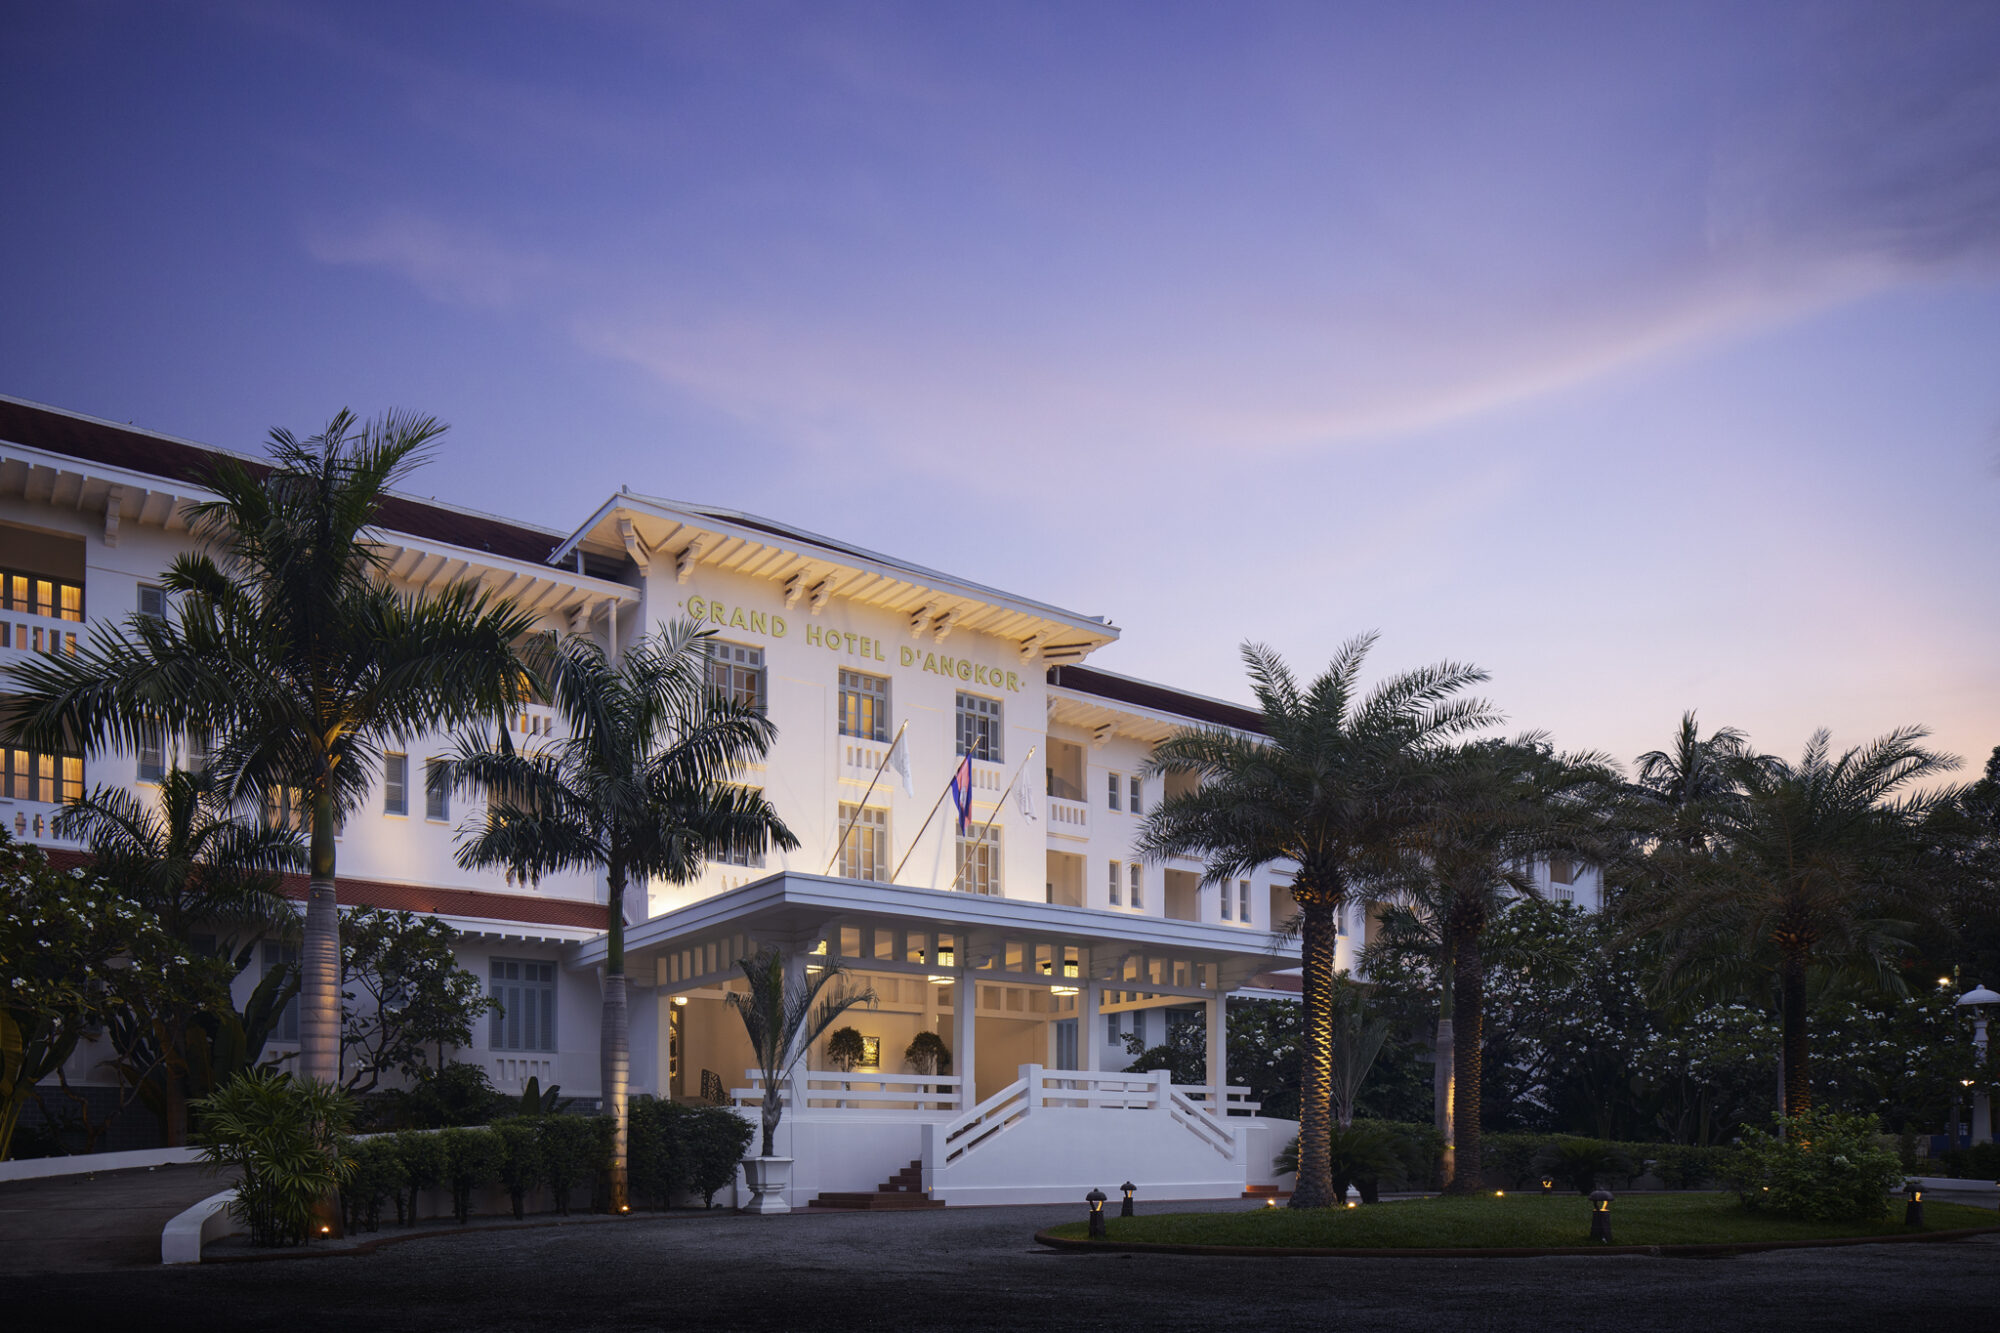 Raffles-Grand-Hotel-dAngkor-1.jpg